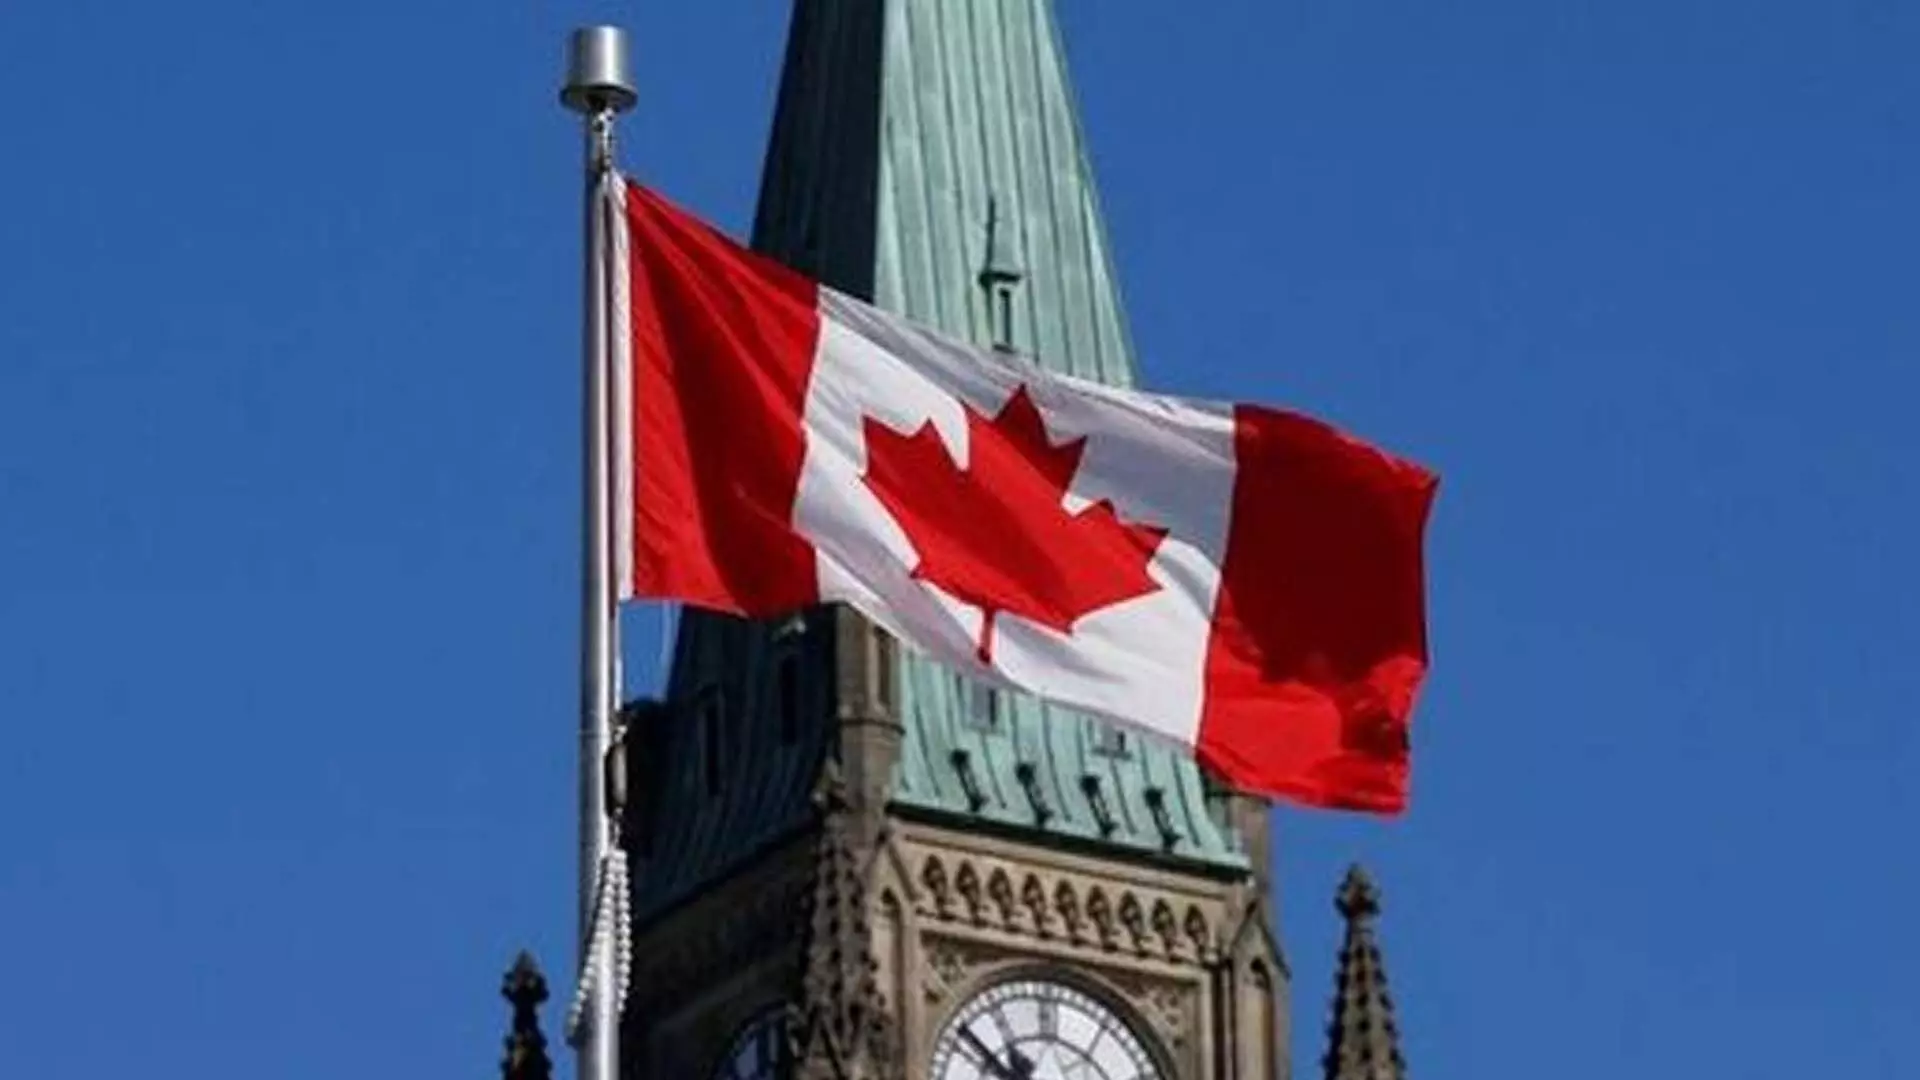 कनाडा को कट्टरपंथी तत्वों को डराने-धमकाने की इजाजत नहीं देनी चाहिए